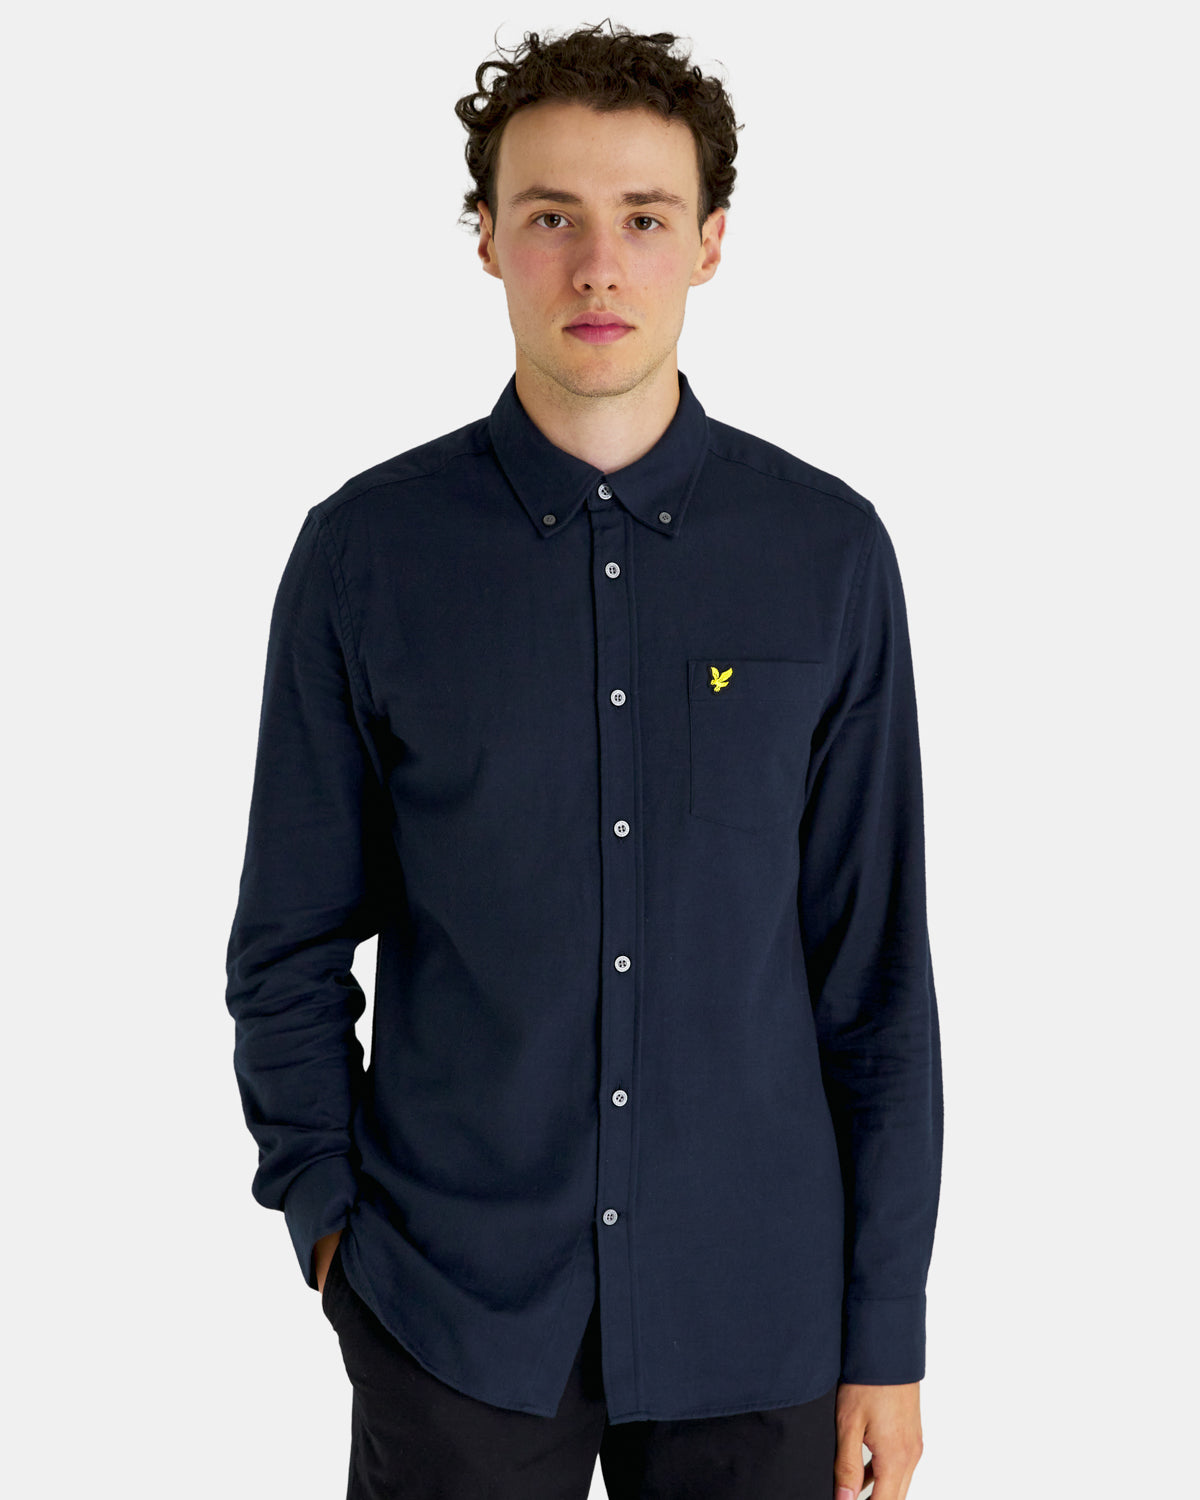 Plain flannel shirt - dark navy